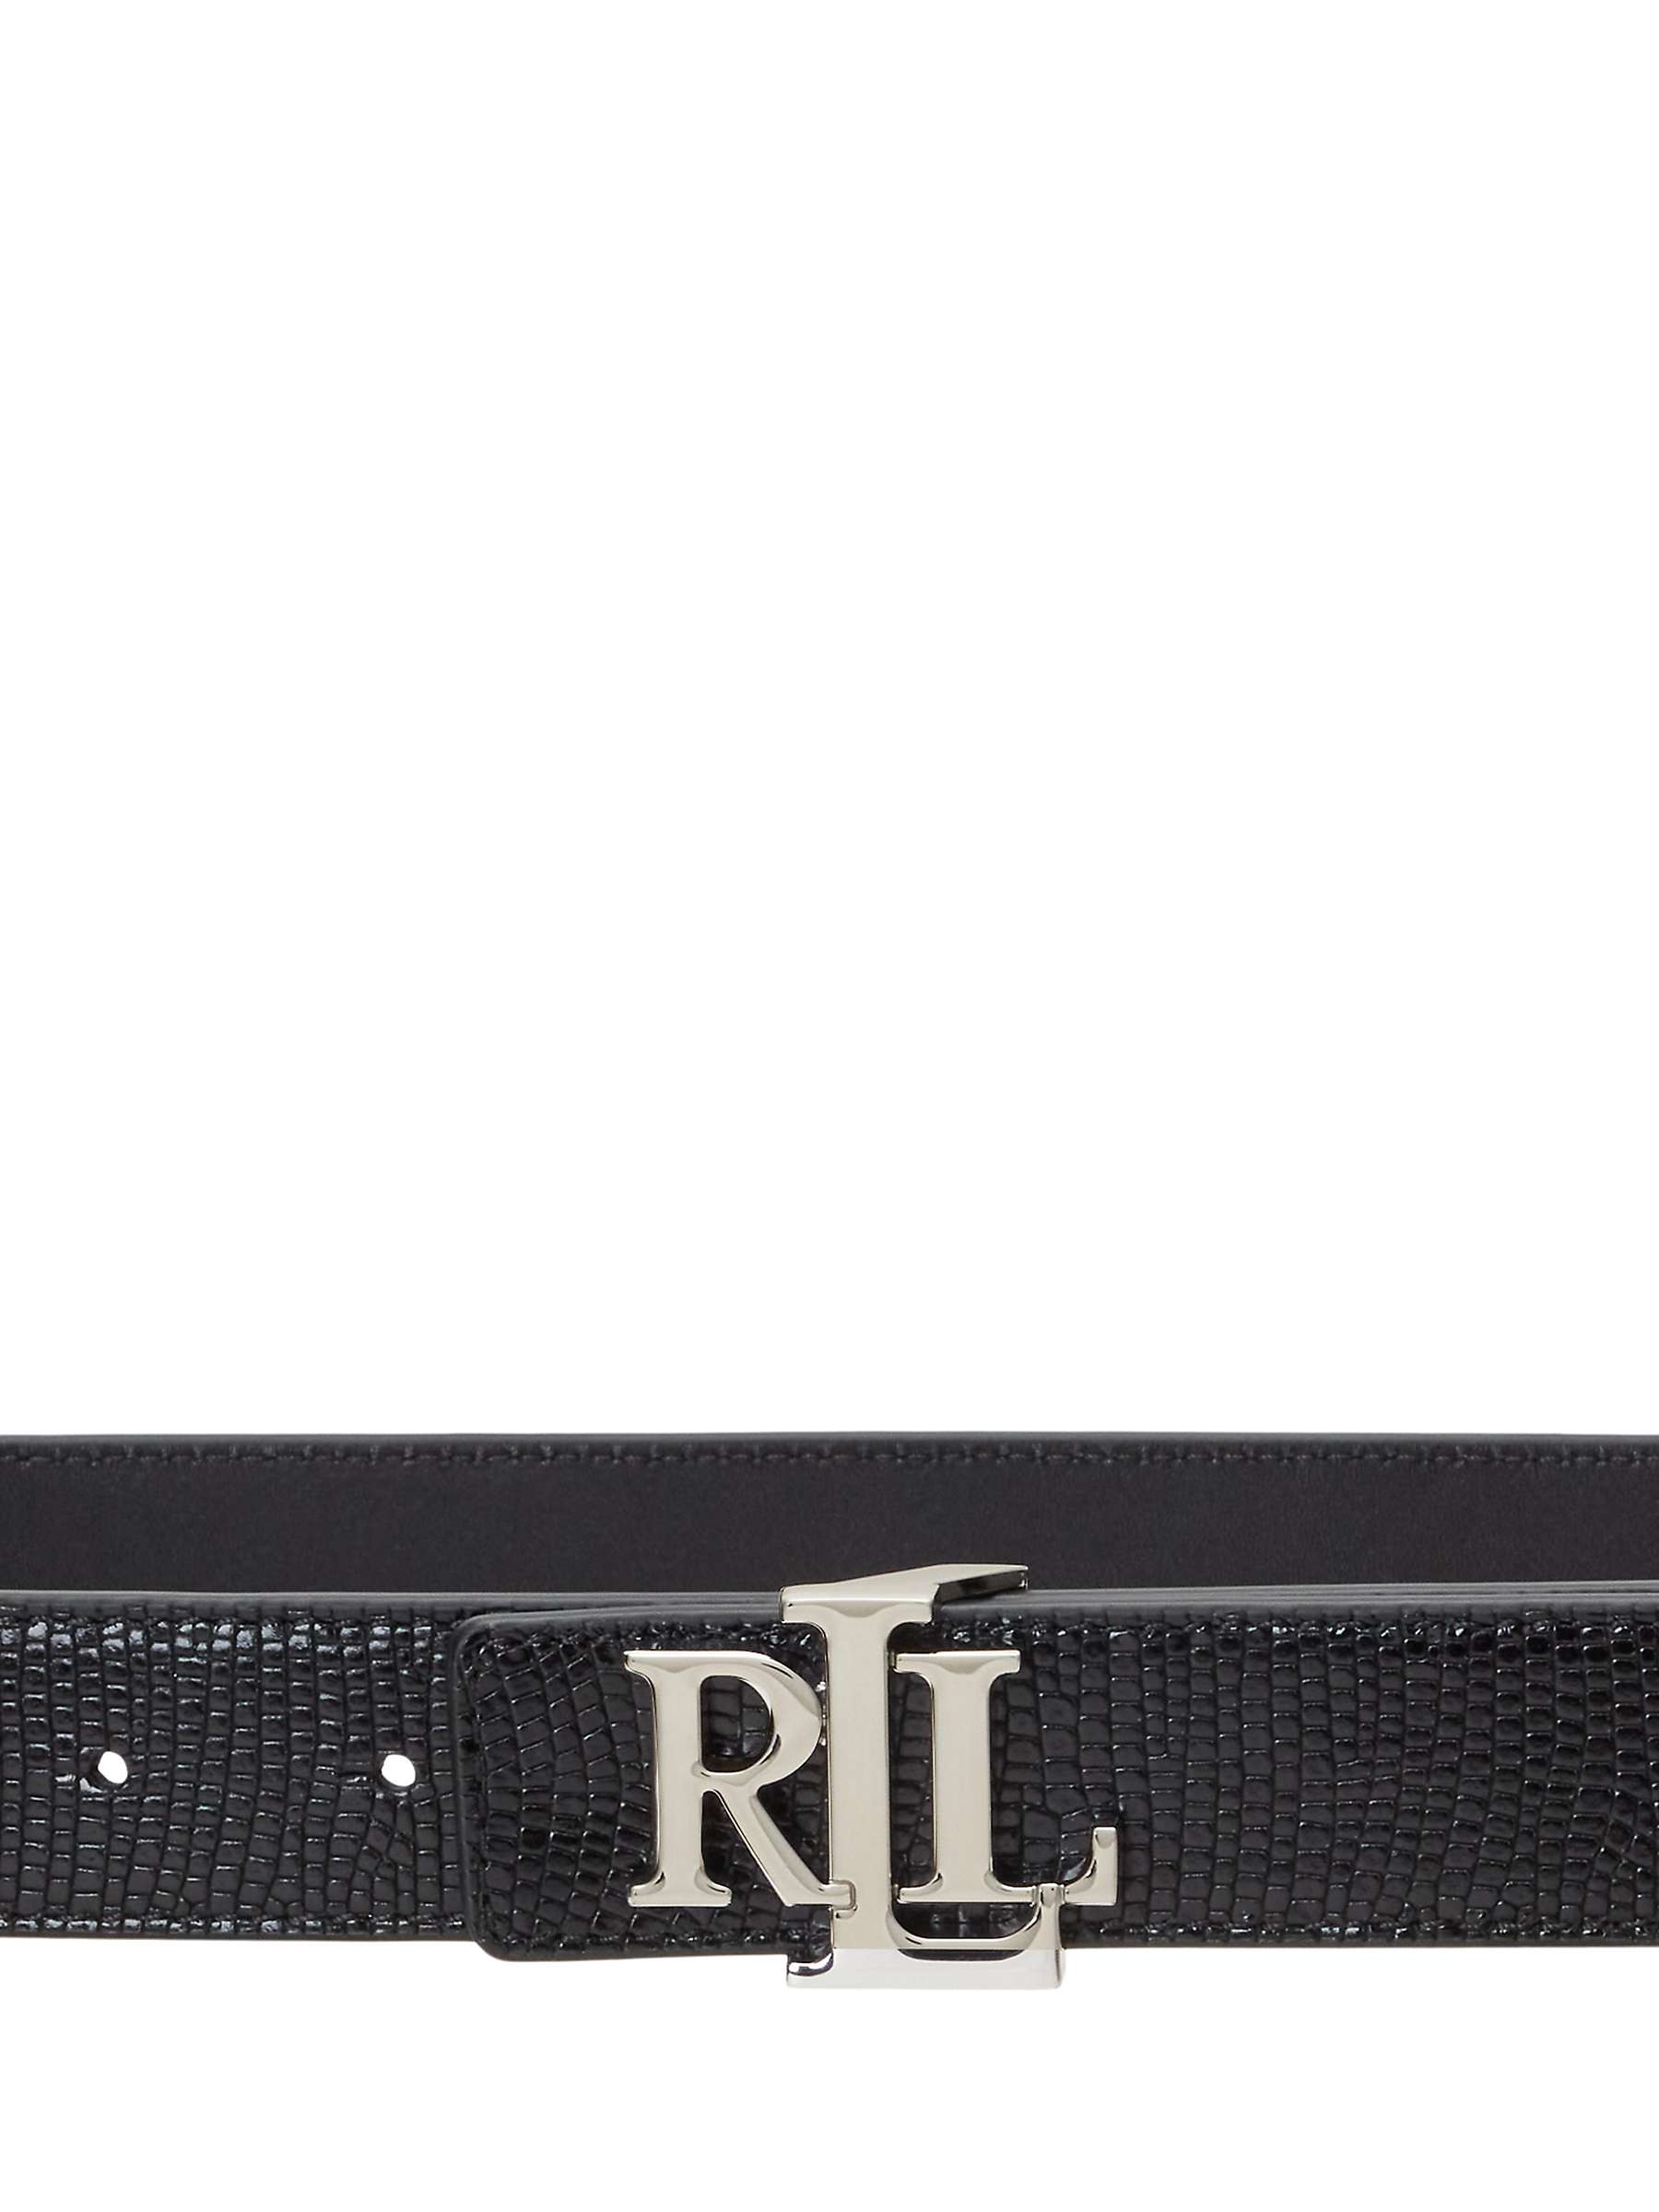 Buy Lauren Ralph Lauren Lizard Texture Reversible Leather Belt, Black/Black Online at johnlewis.com